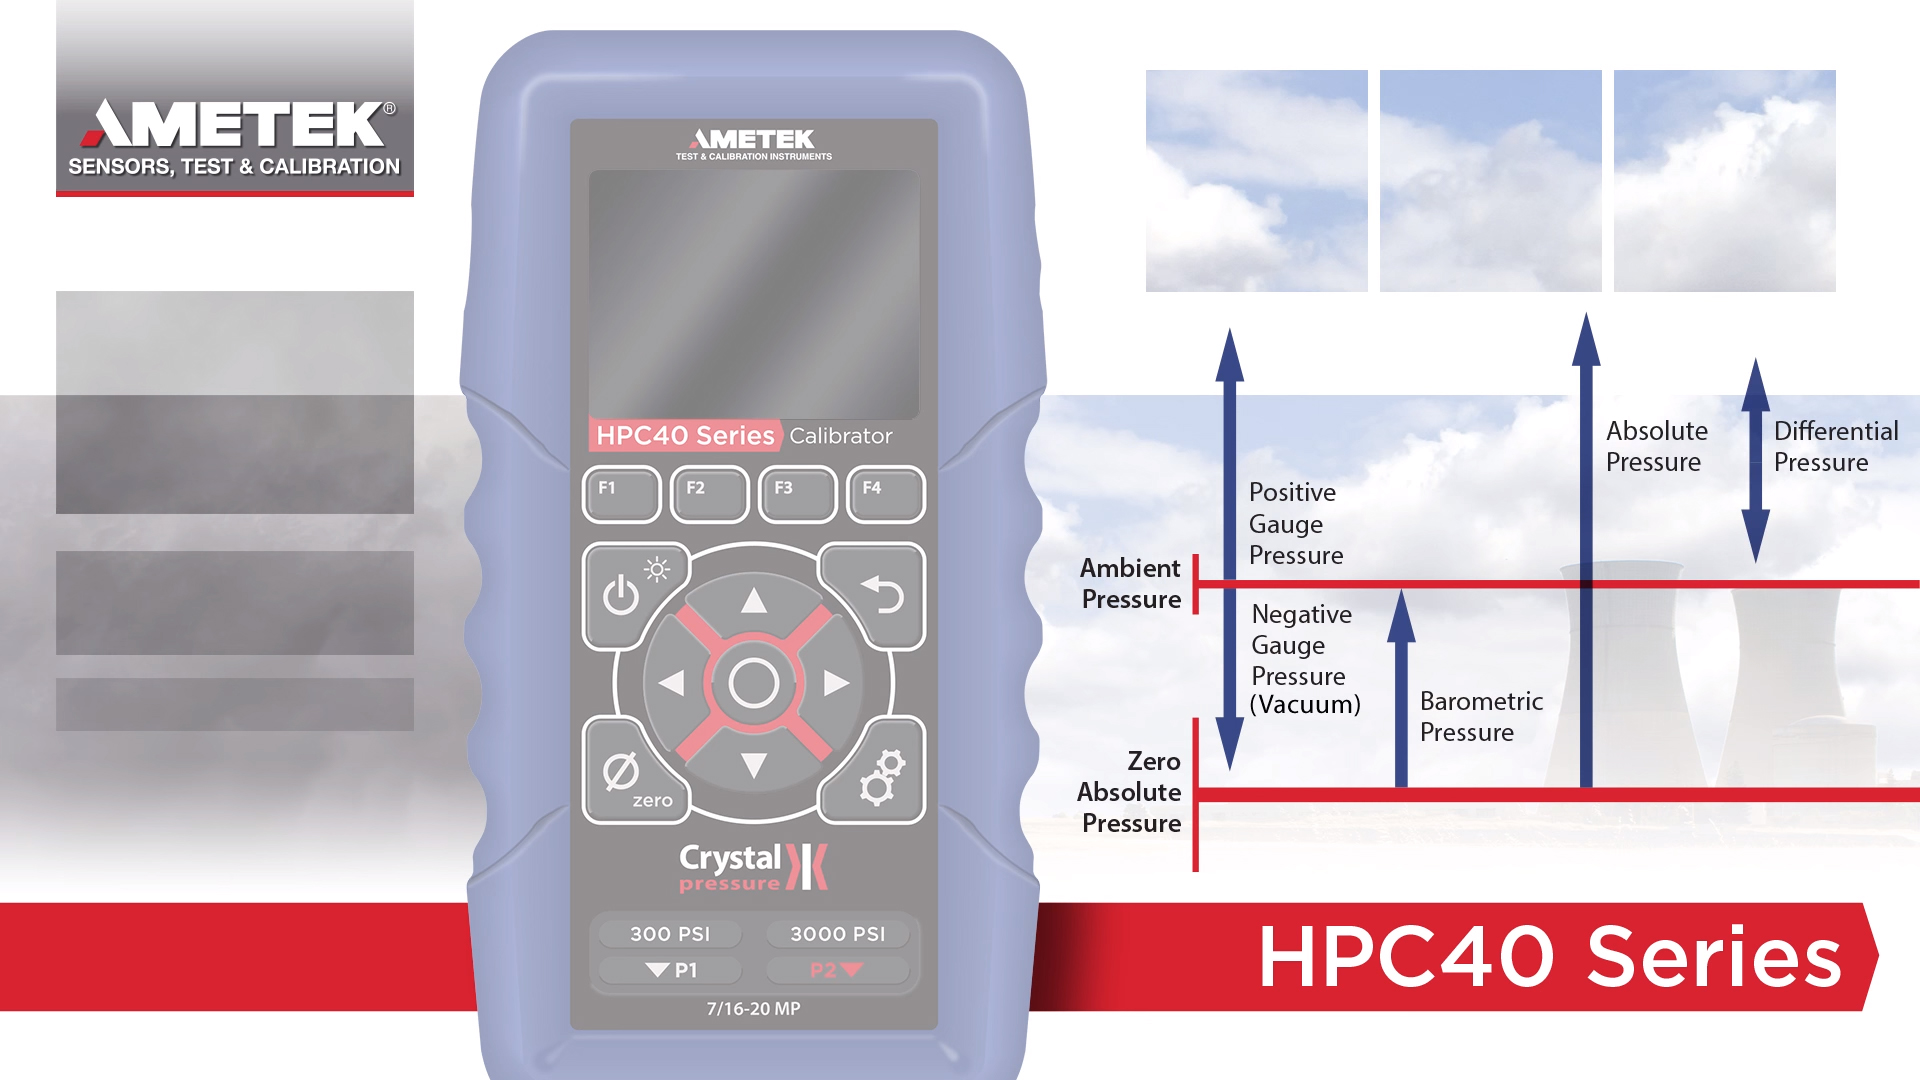 Ametek Crystal HPC40 Series Pressure Calibrator pressure examples.